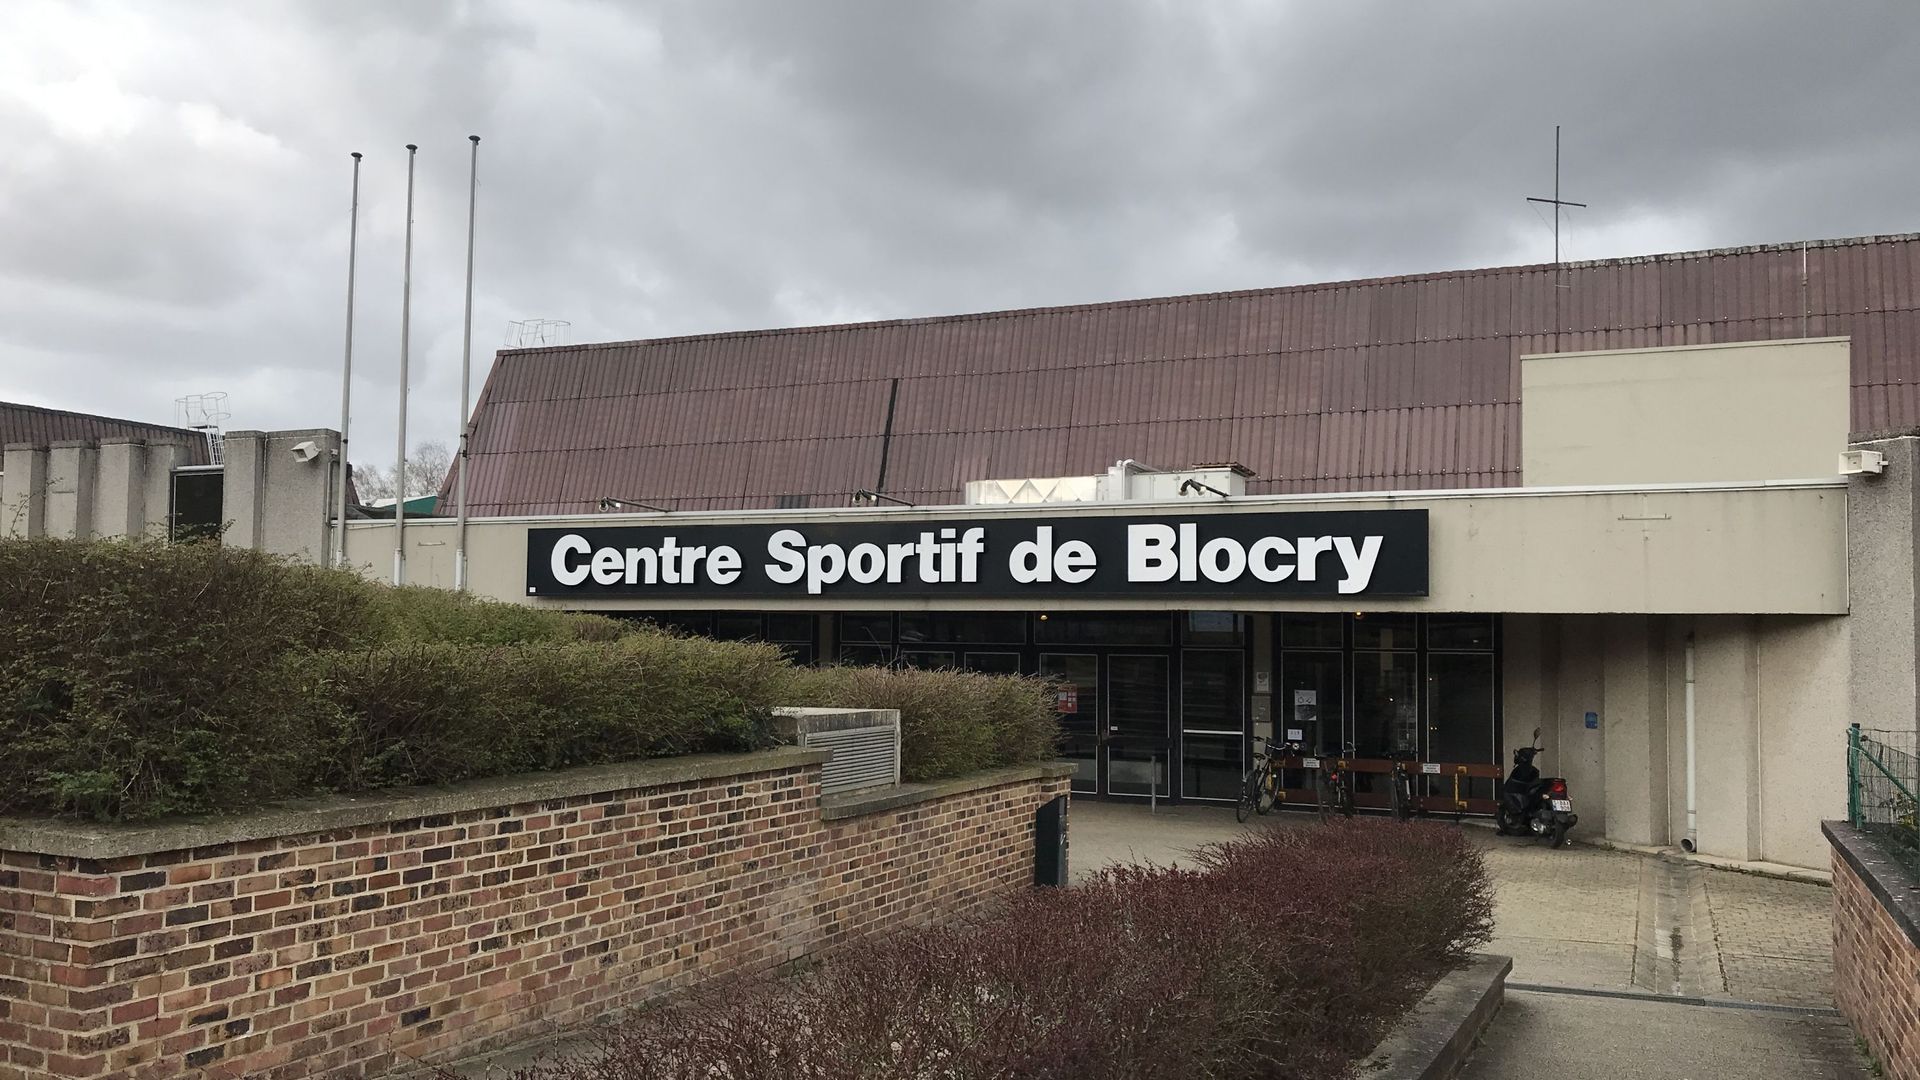 De nombreux sportifs de haut-niveau viennent s'entraîner au Blocry: athlètes, judokas, boxeurs et grimpeurs notamment.